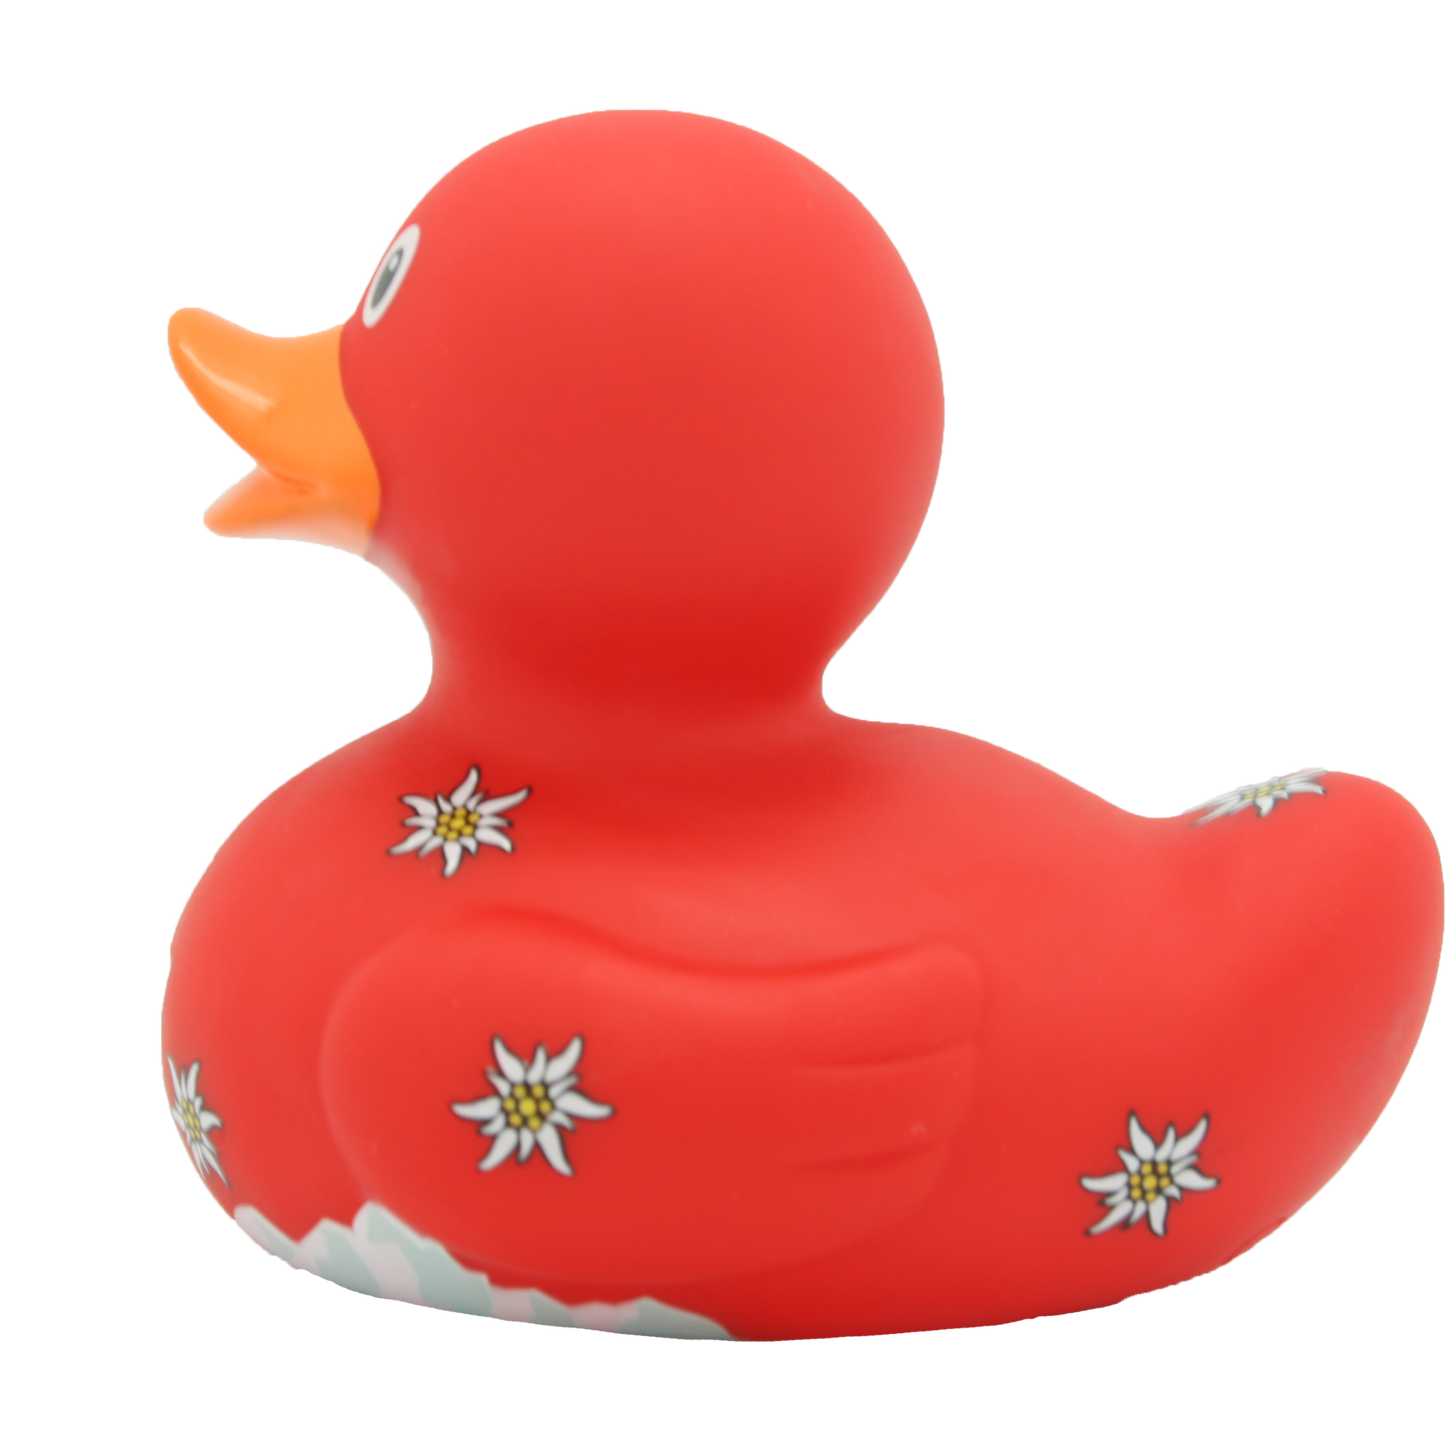 Swiss duck